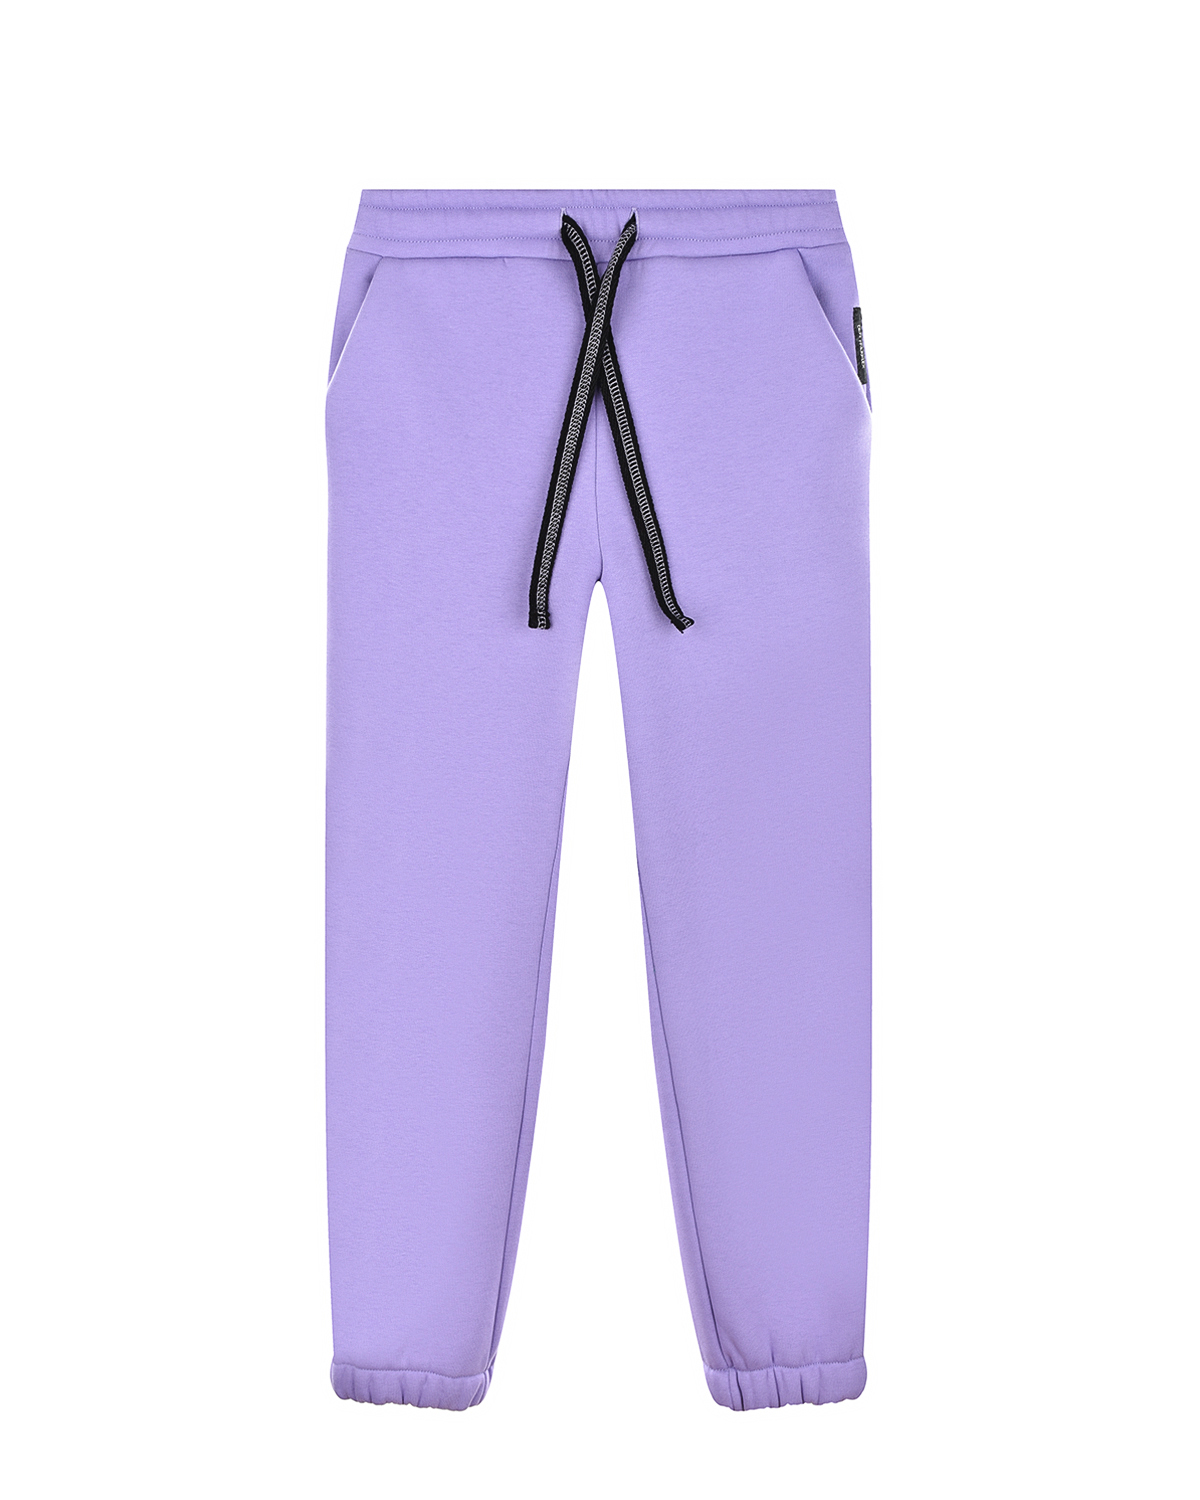 Сиреневые спортивные брюки Dan Maralex детские, размер 152, цвет сиреневый - фото 1